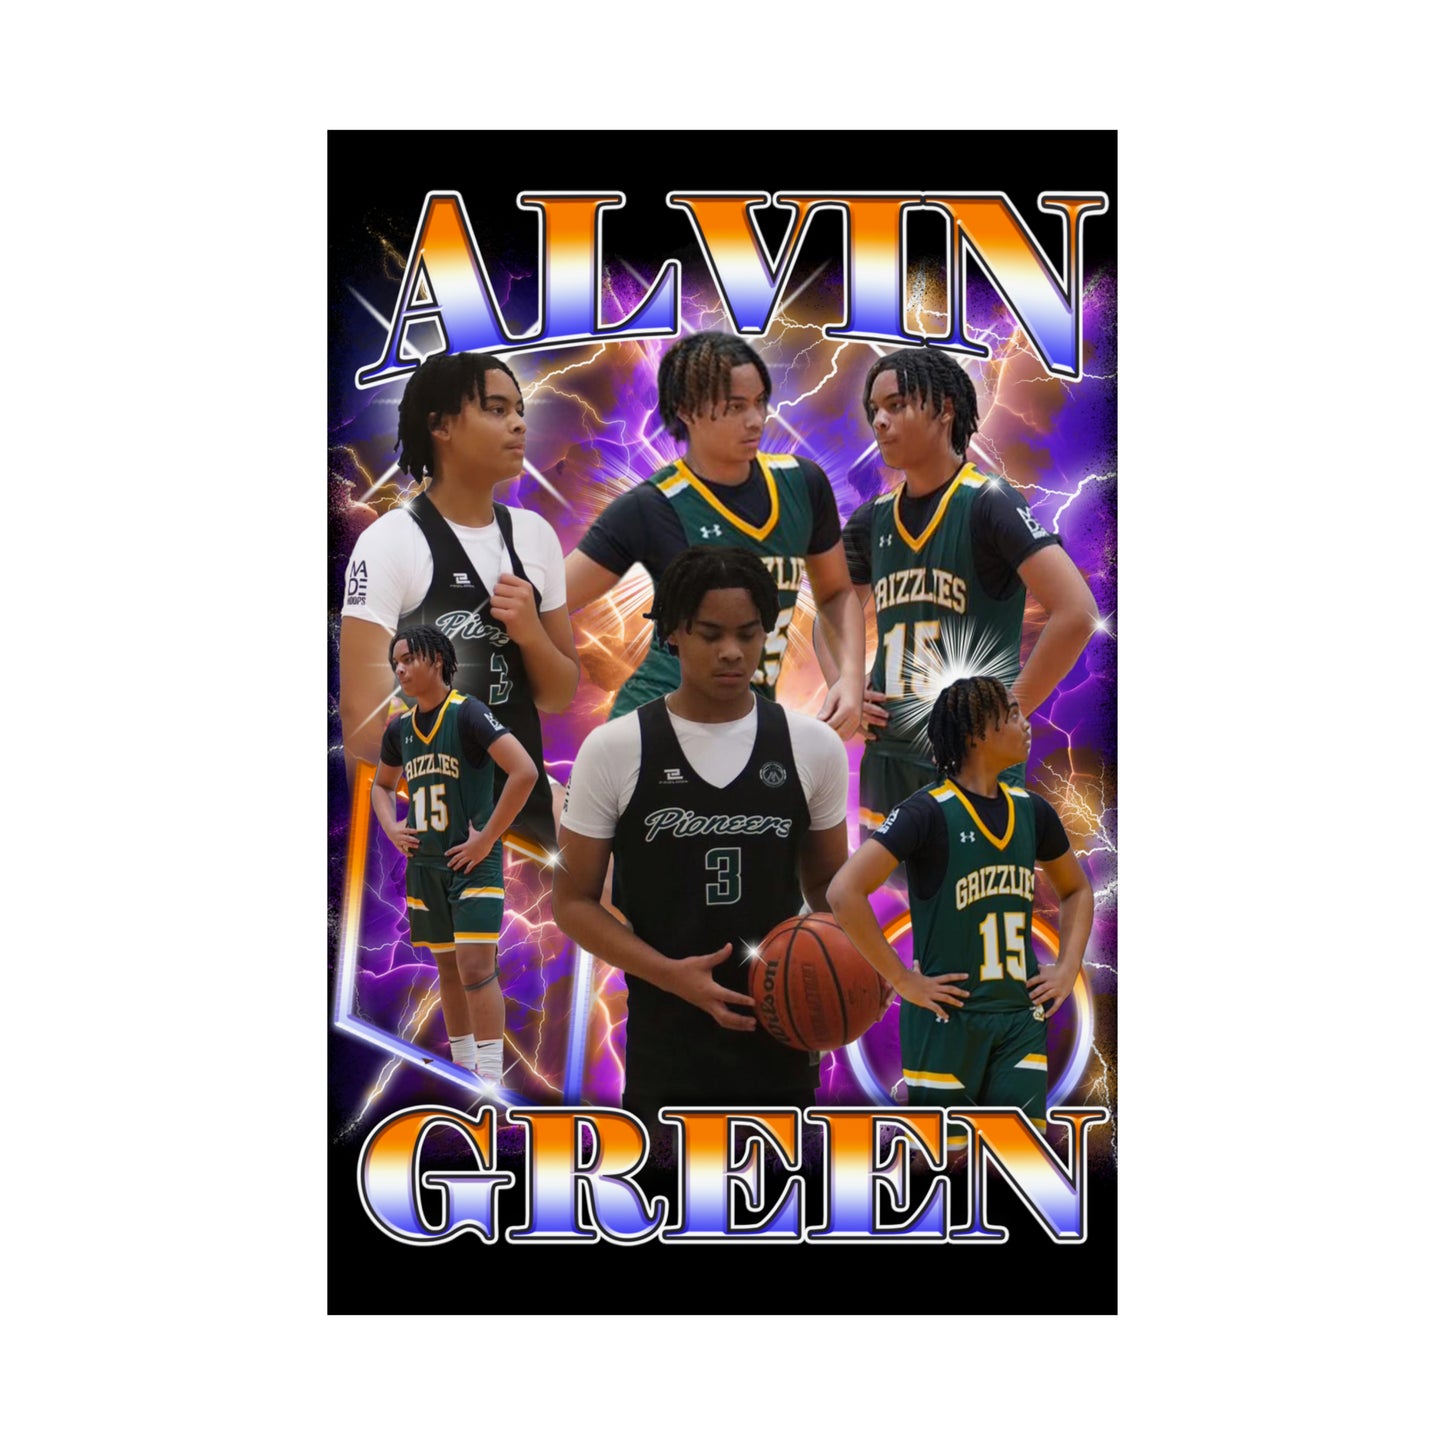 Alvin Green Poster